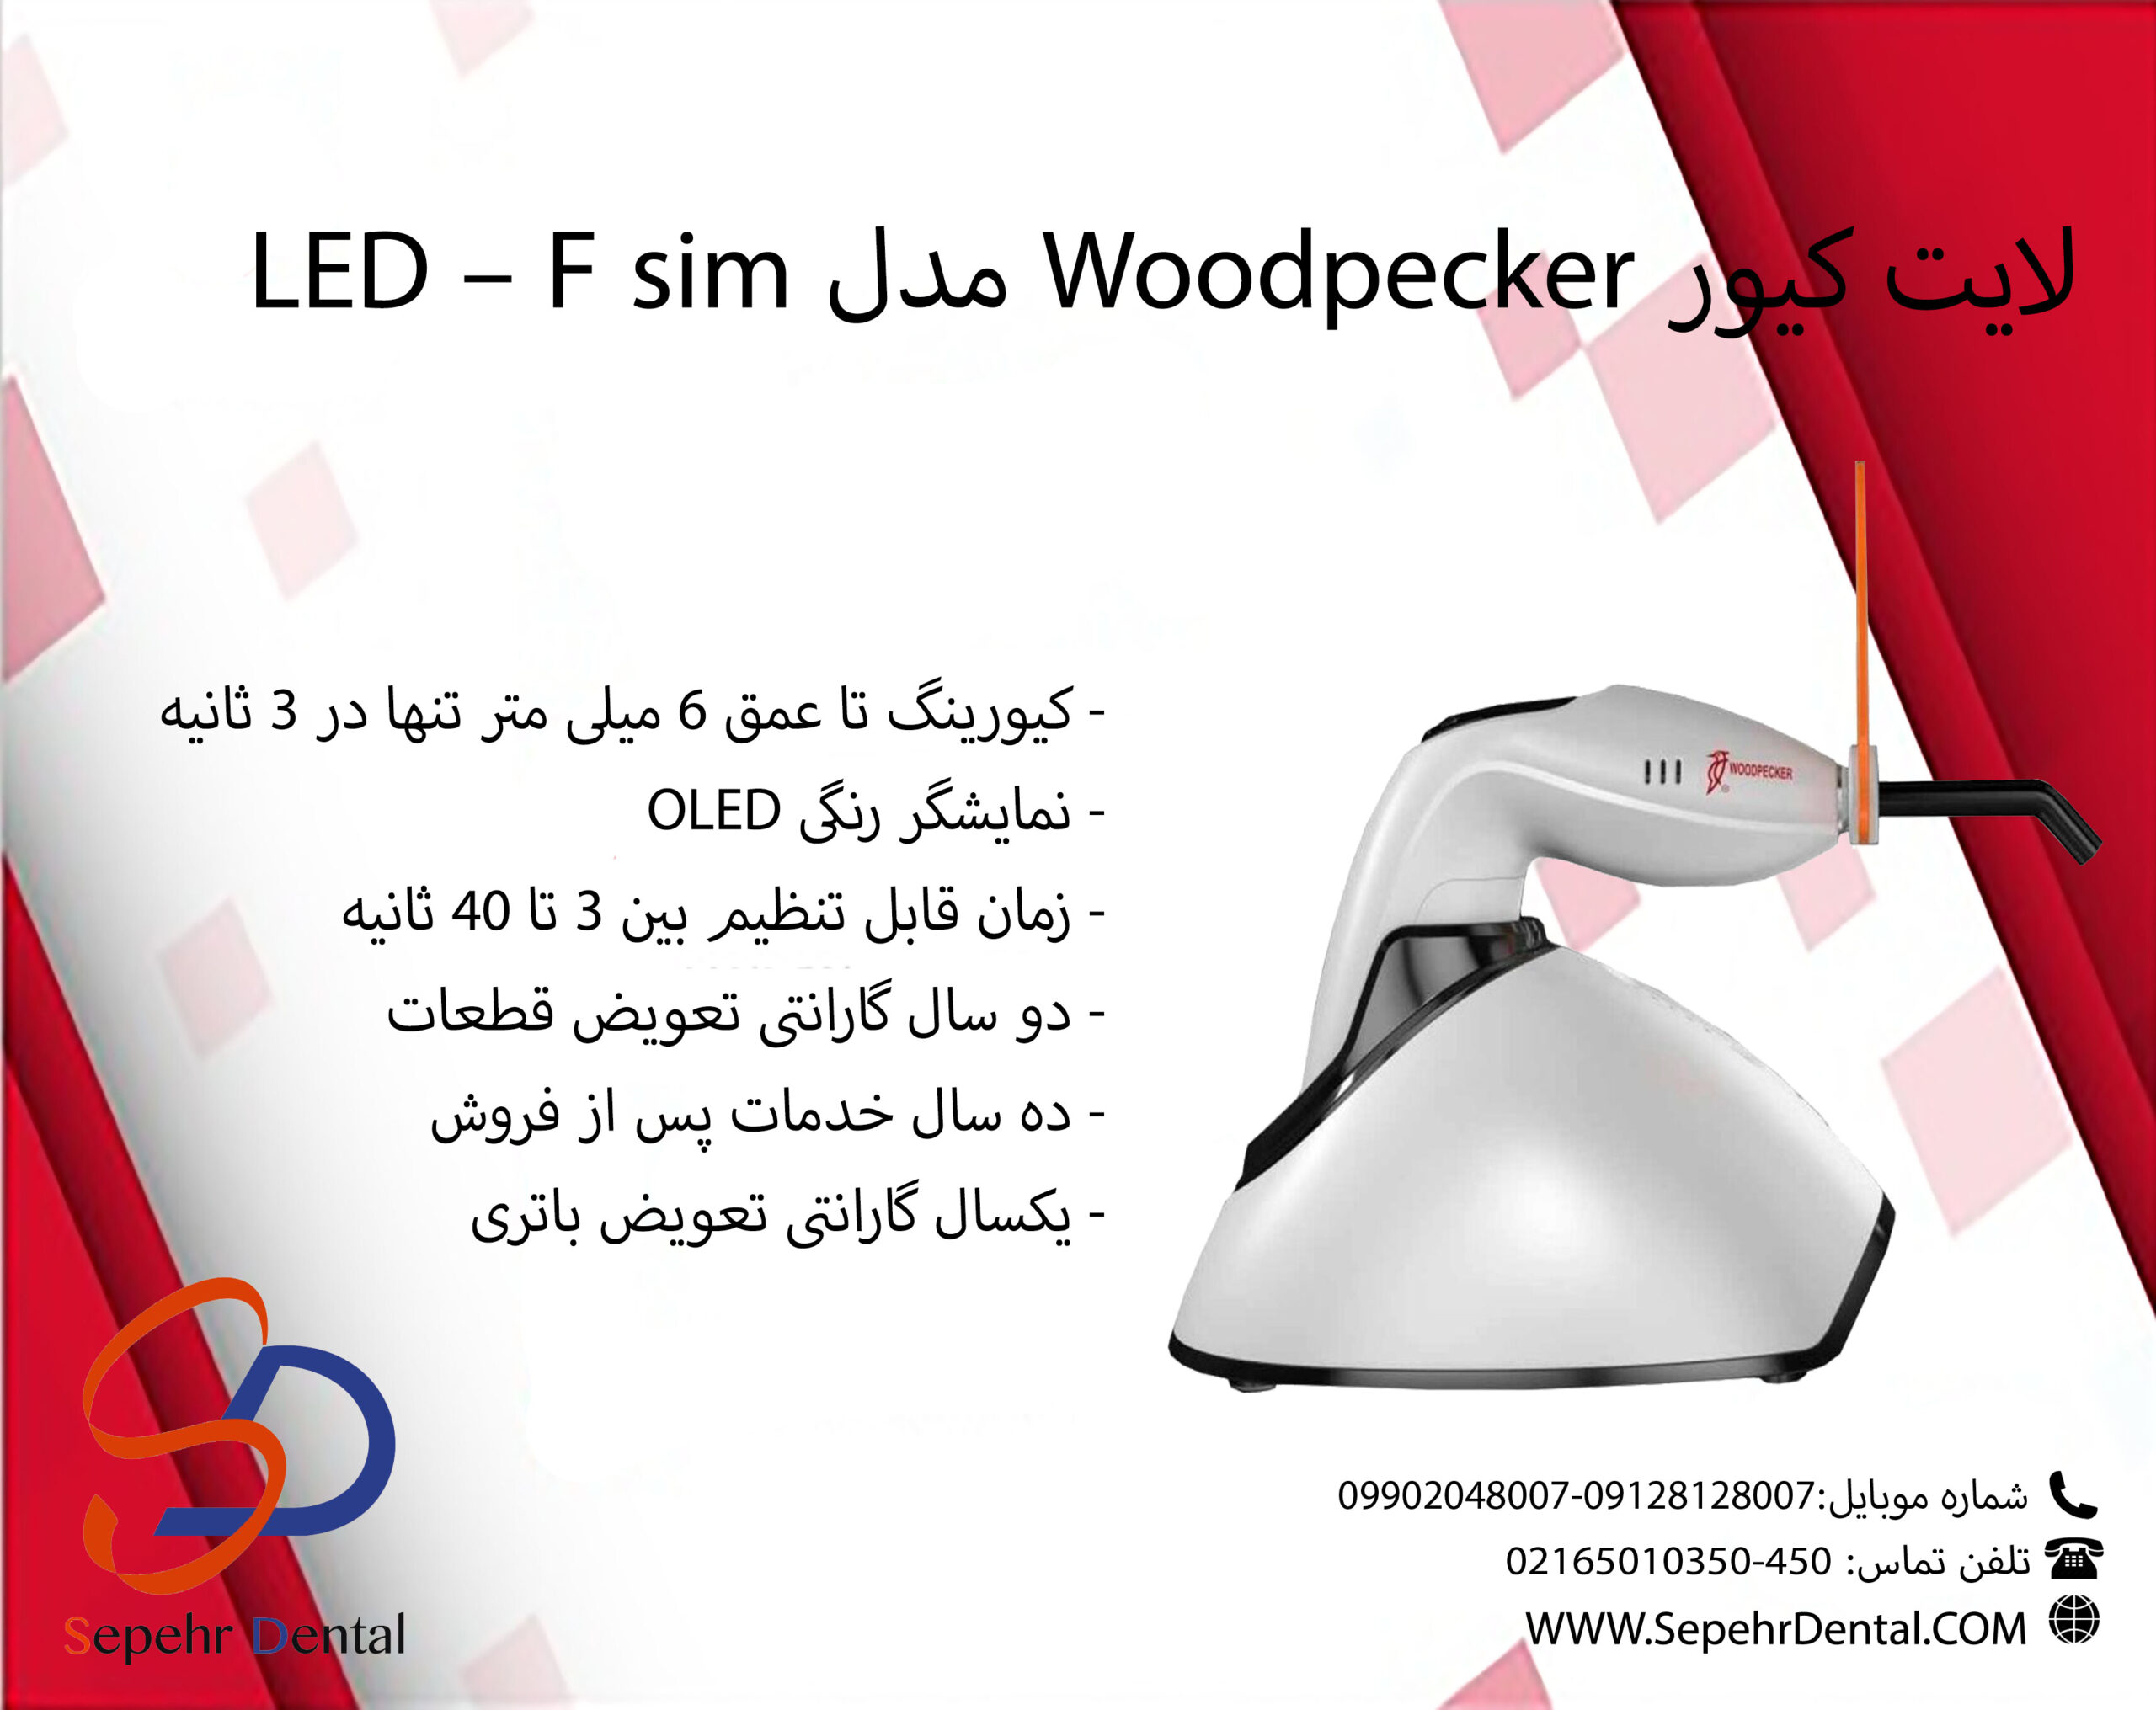 لایت کیور وودپیکر Woodpecker مدل LED - F sim